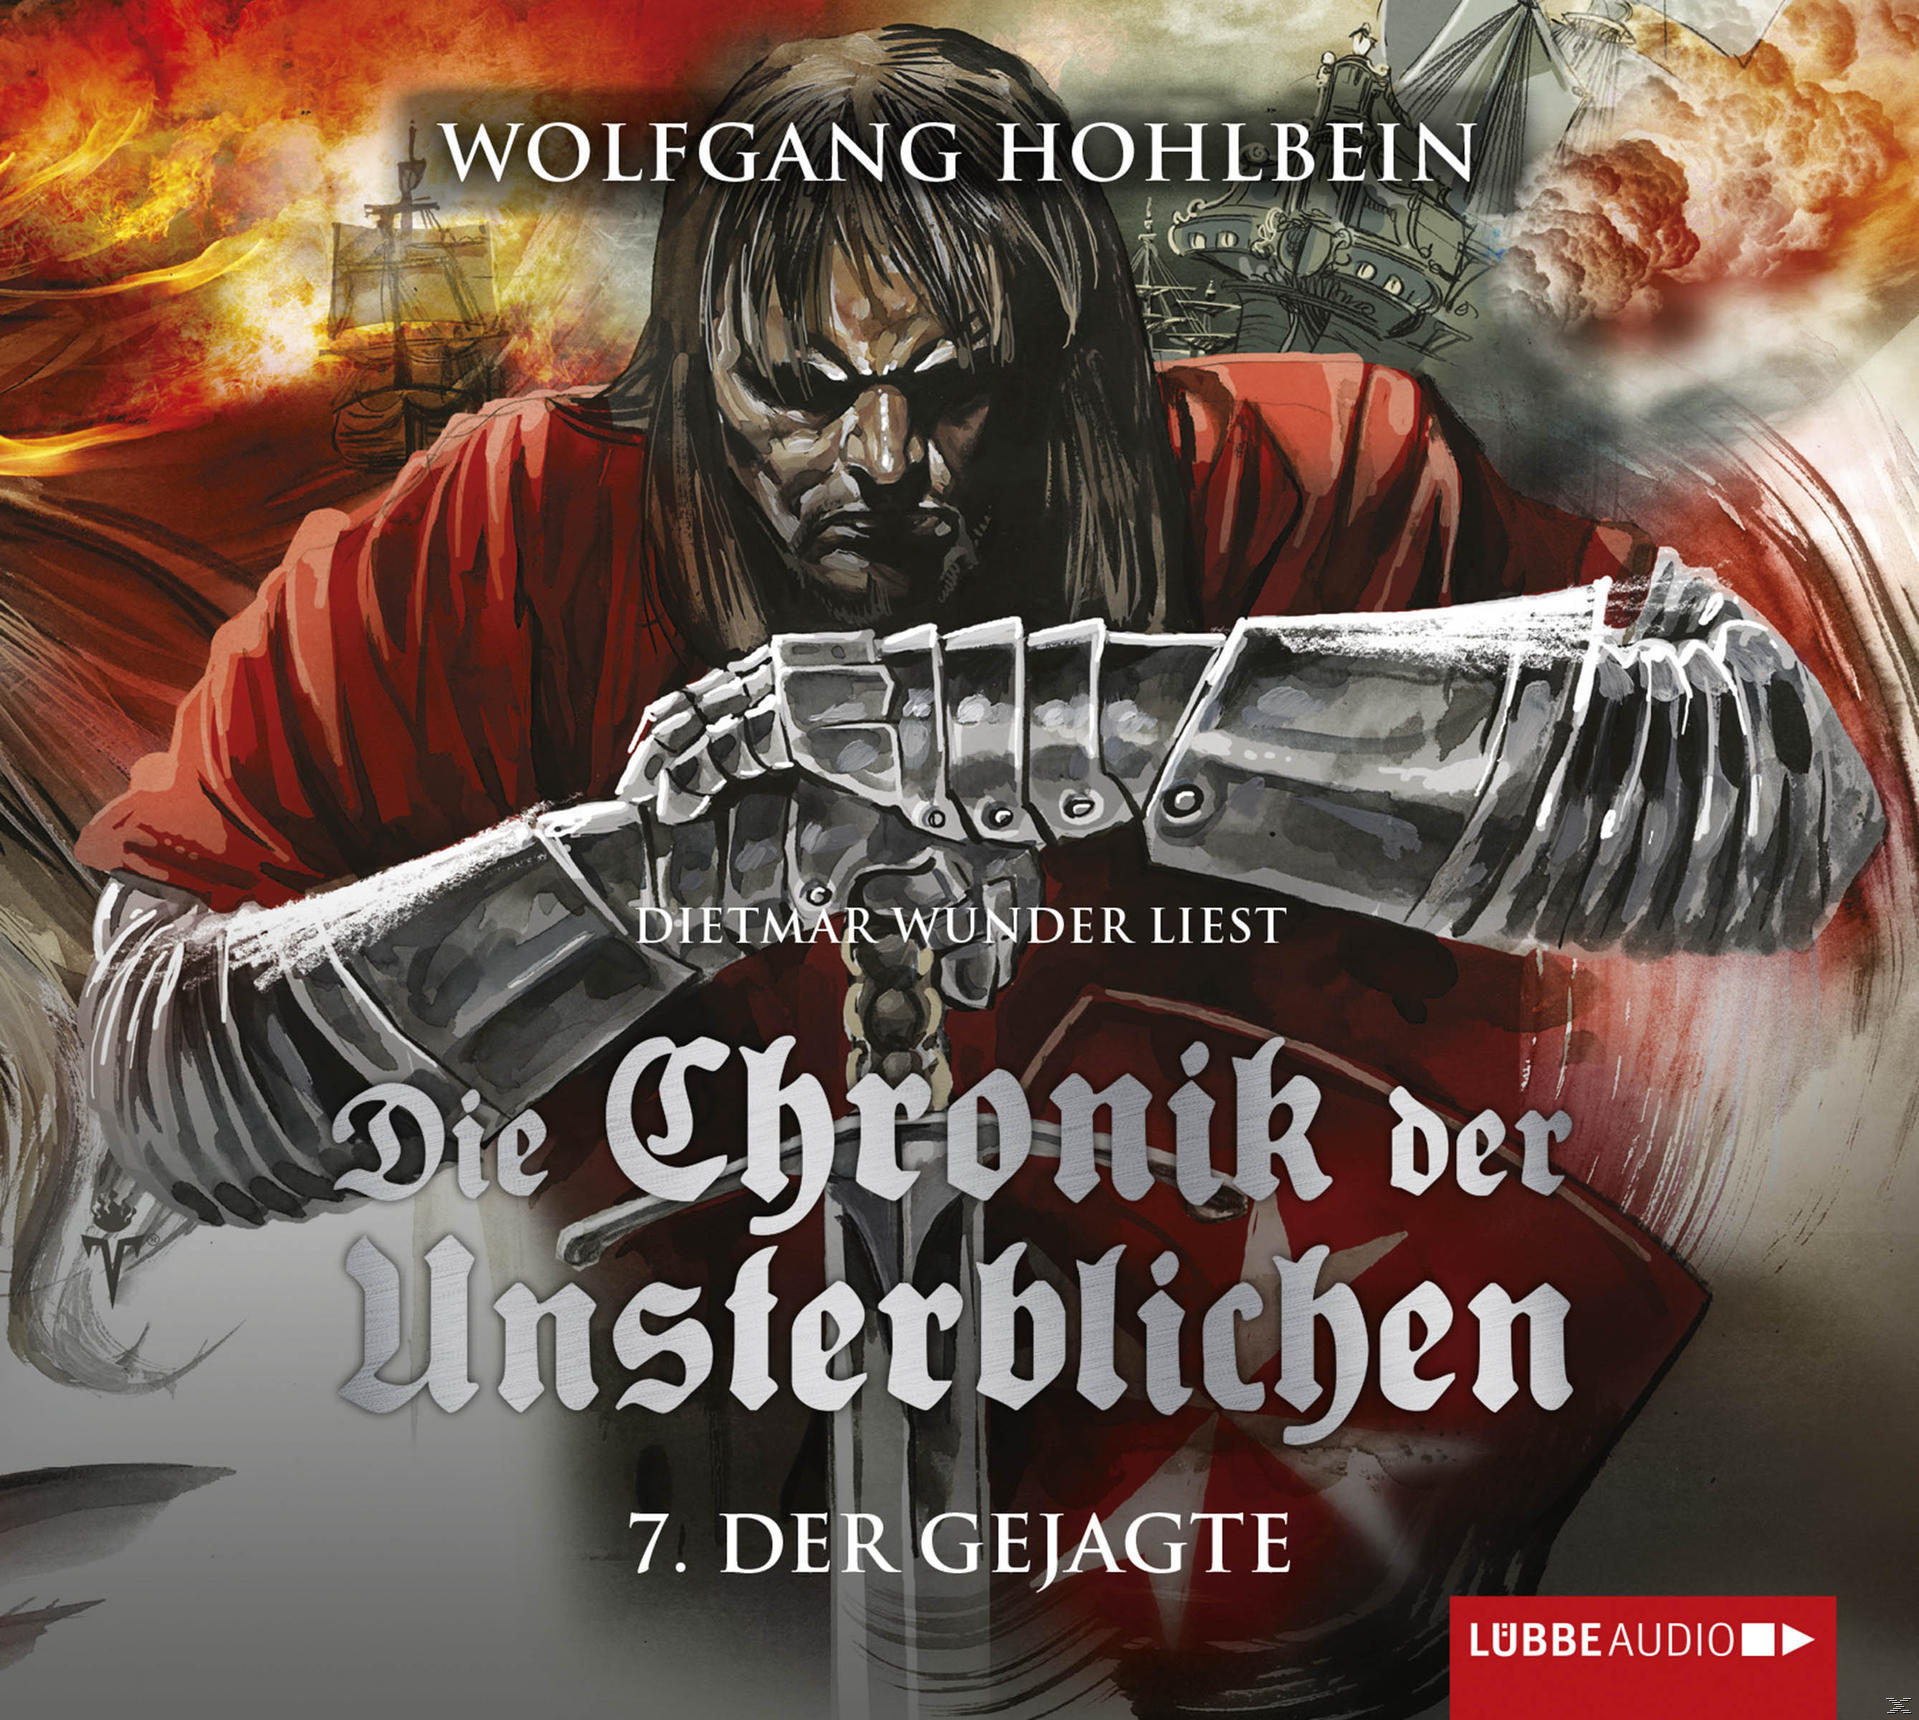 Hohlbein Wolfgang - Die Chronik - Unsterblichen - 7: Gejagte Der der (CD) Teil